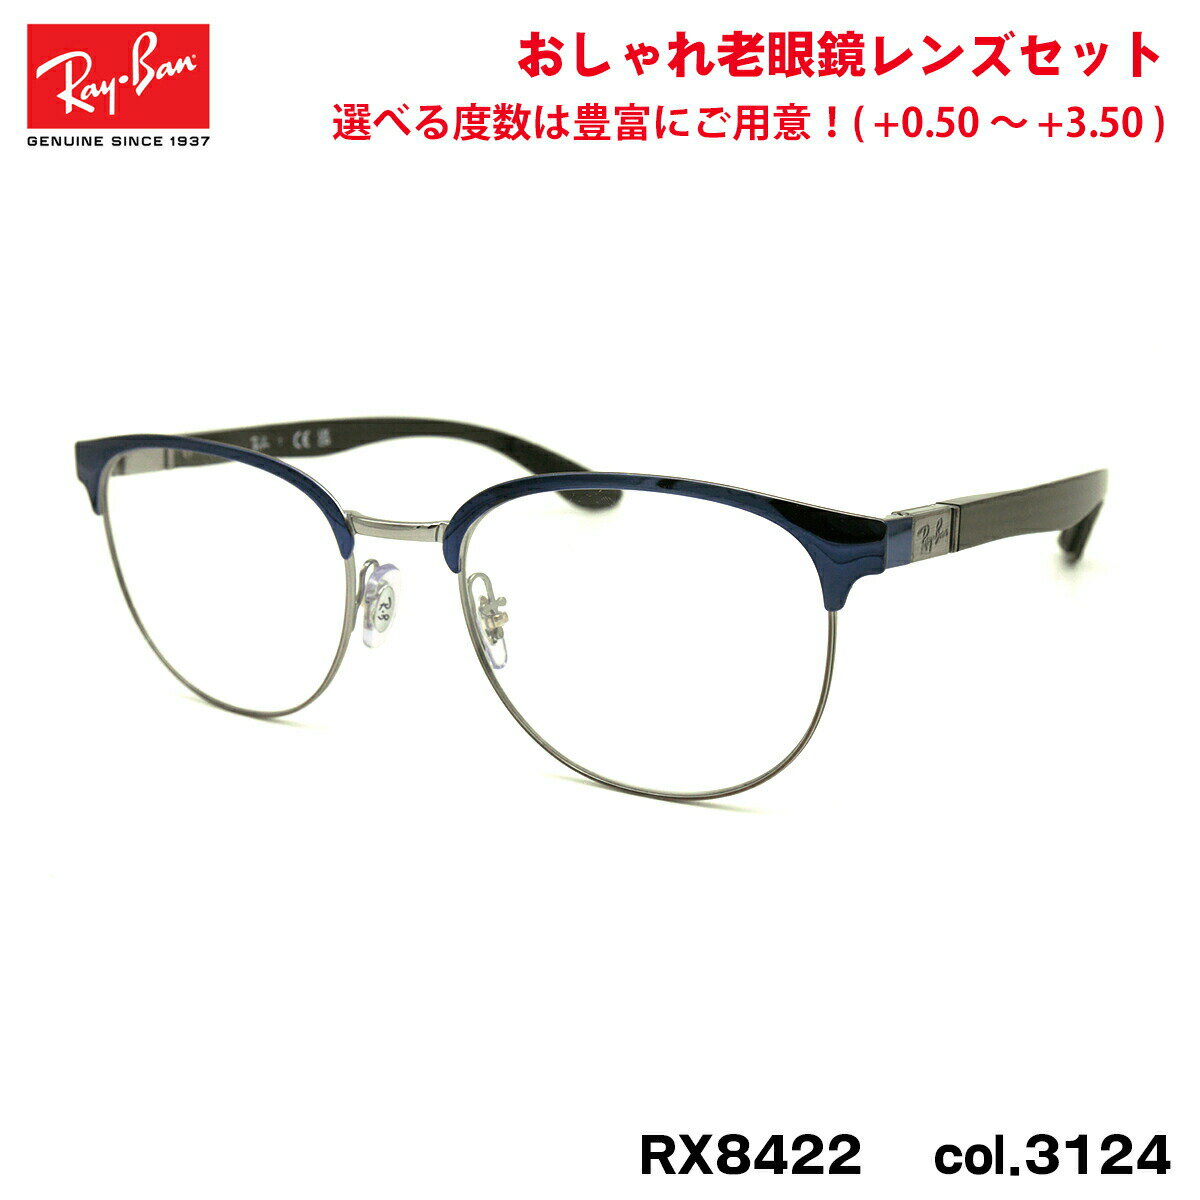 レイバン 老眼鏡 RX8422 (RB8422) 3124 52mm Ray-Ban バネ丁番 カーボンファイバー UVカット ブルーライトカット